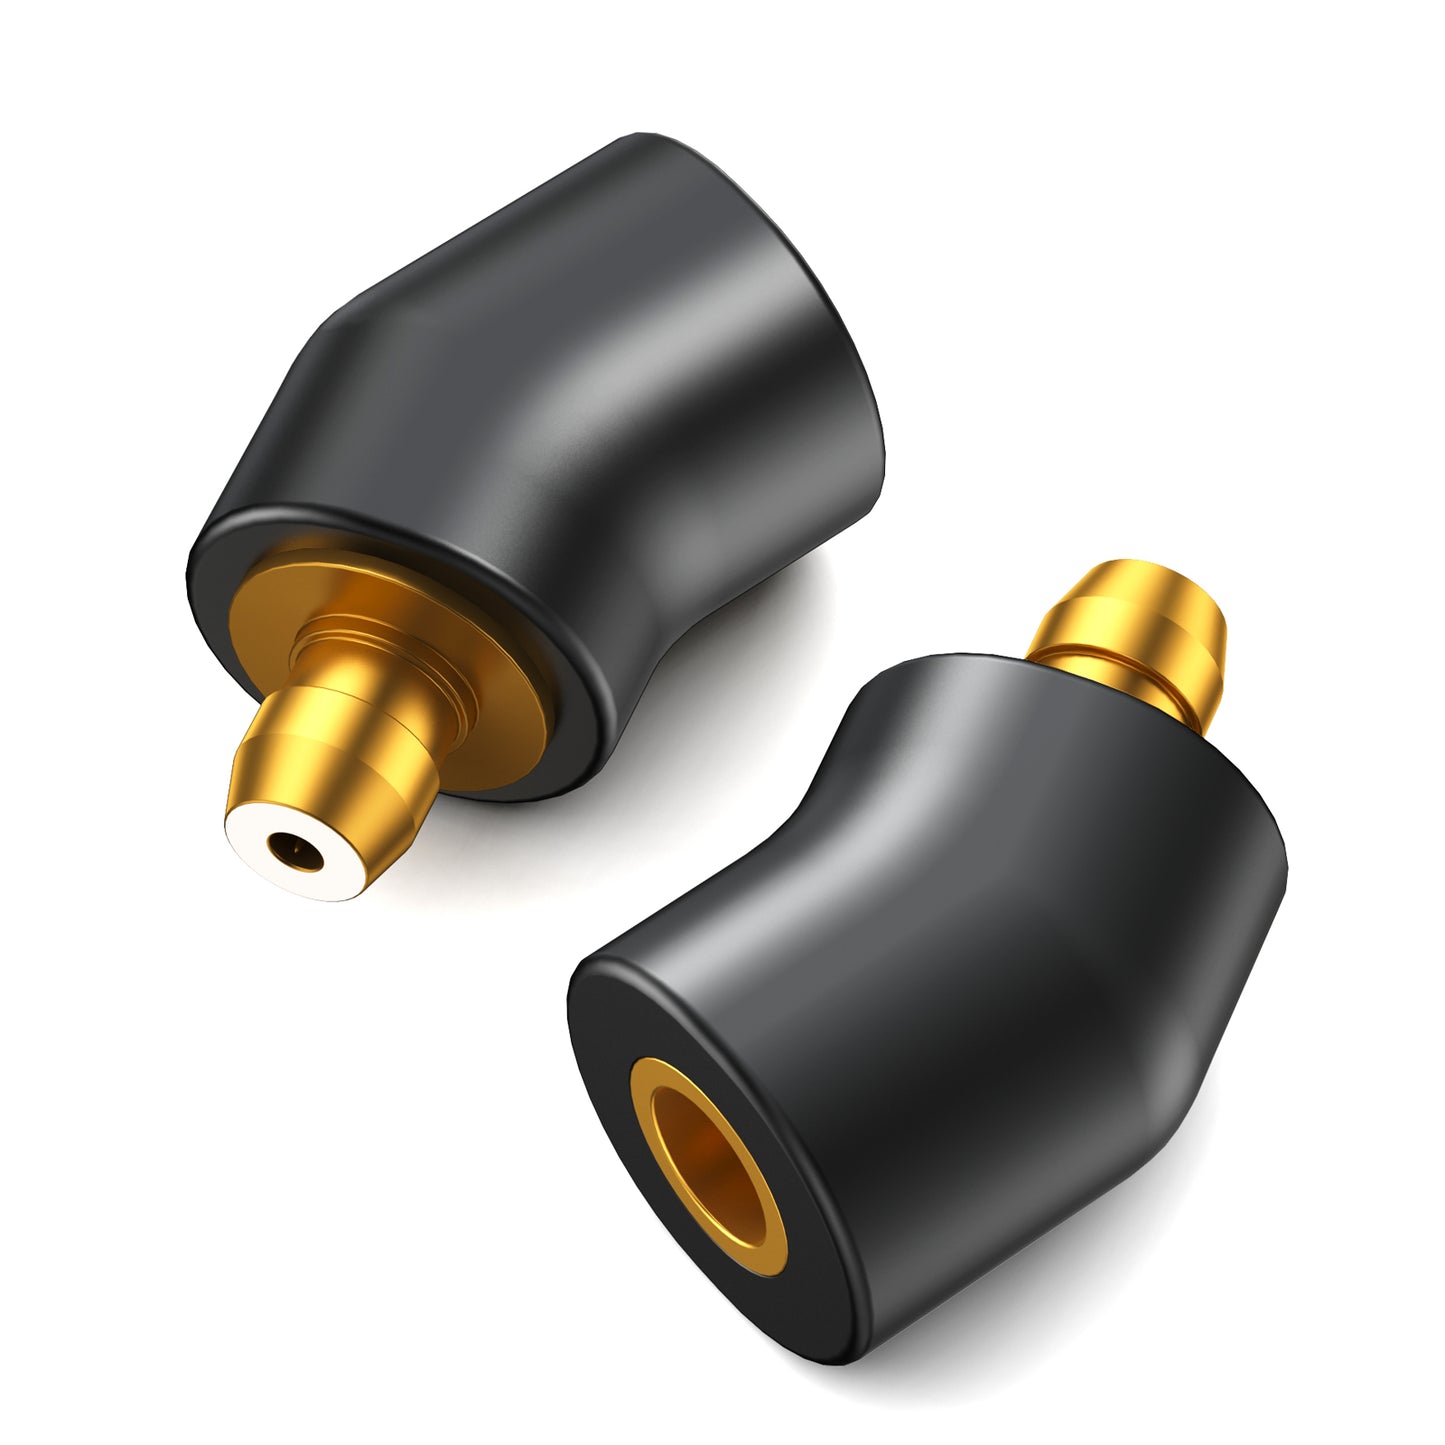 COOYIN MMCX (リケーブル側) to EAR (イヤホン側) アダプター コネクター スライダー 金メッキプラグ 統合成形技術 音質劣化なし簡潔 精緻 線材テスト作業用 ミニタイプ